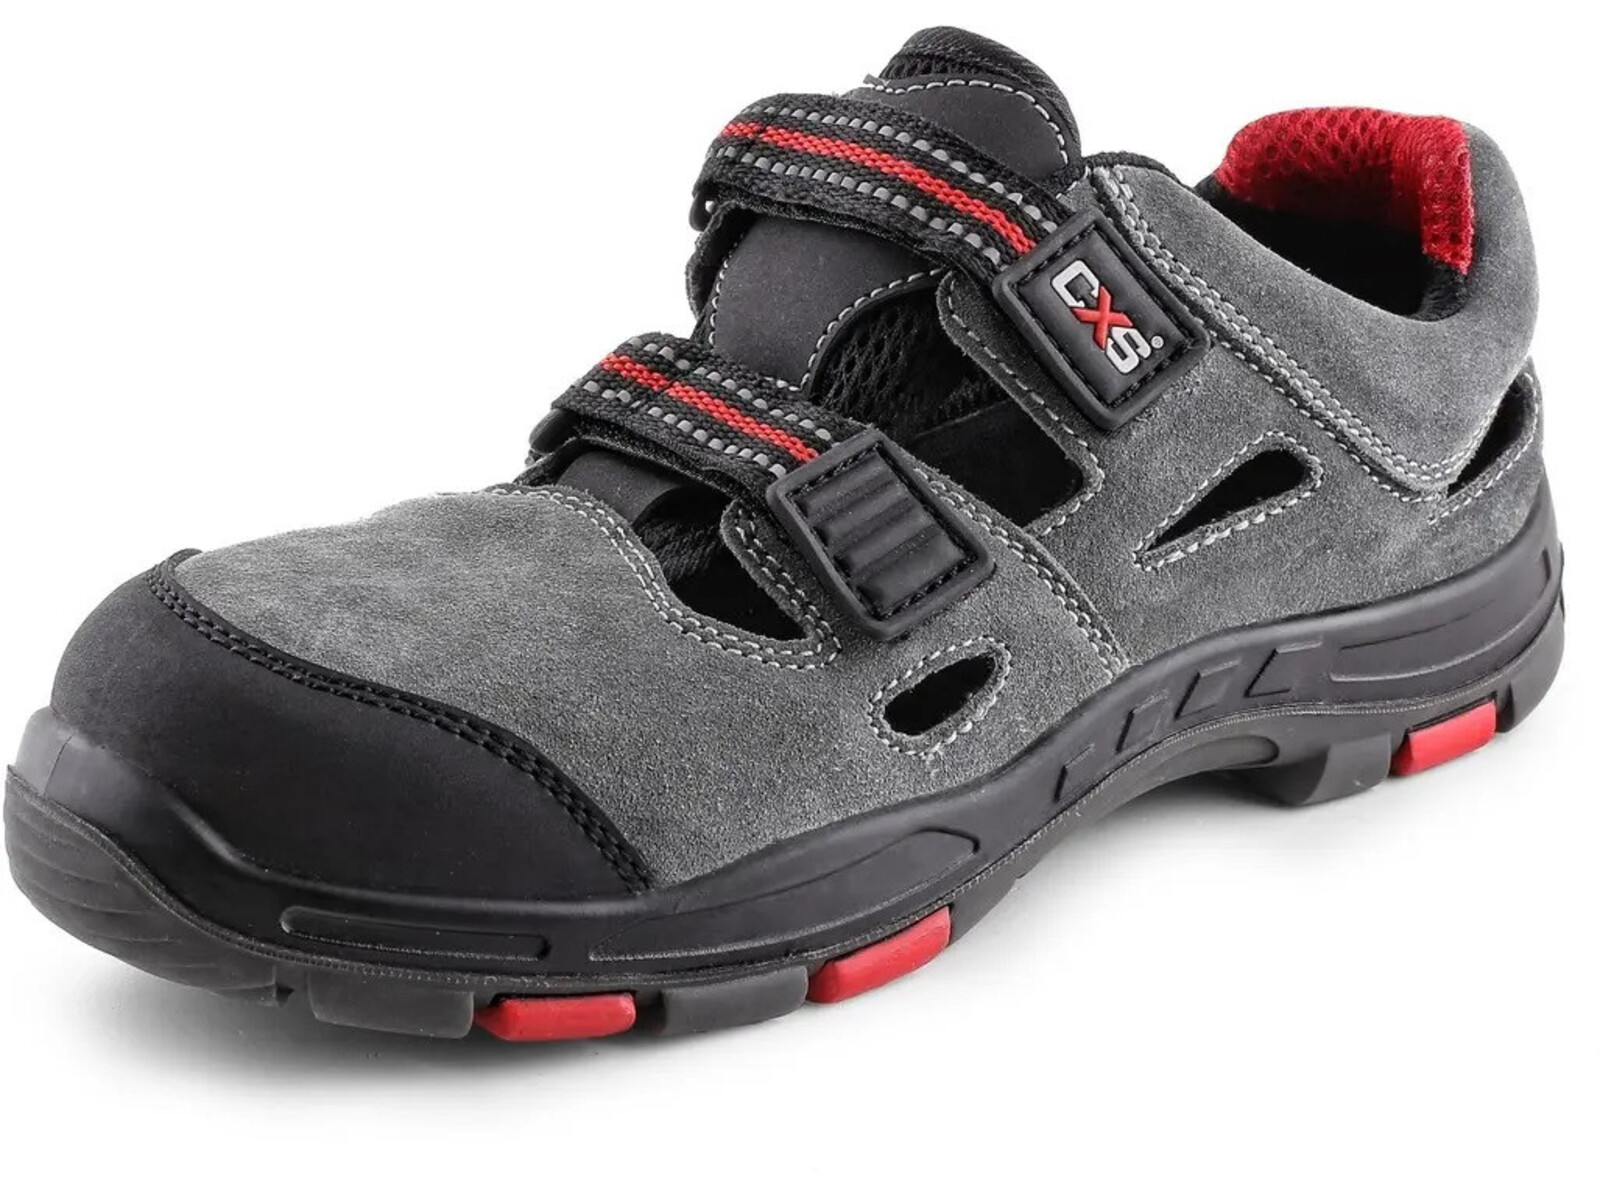 Bezpečnostné sandále CXS Rock Phyllite S1P SRA HRO MF - veľkosť: 48, farba: sivá/červená